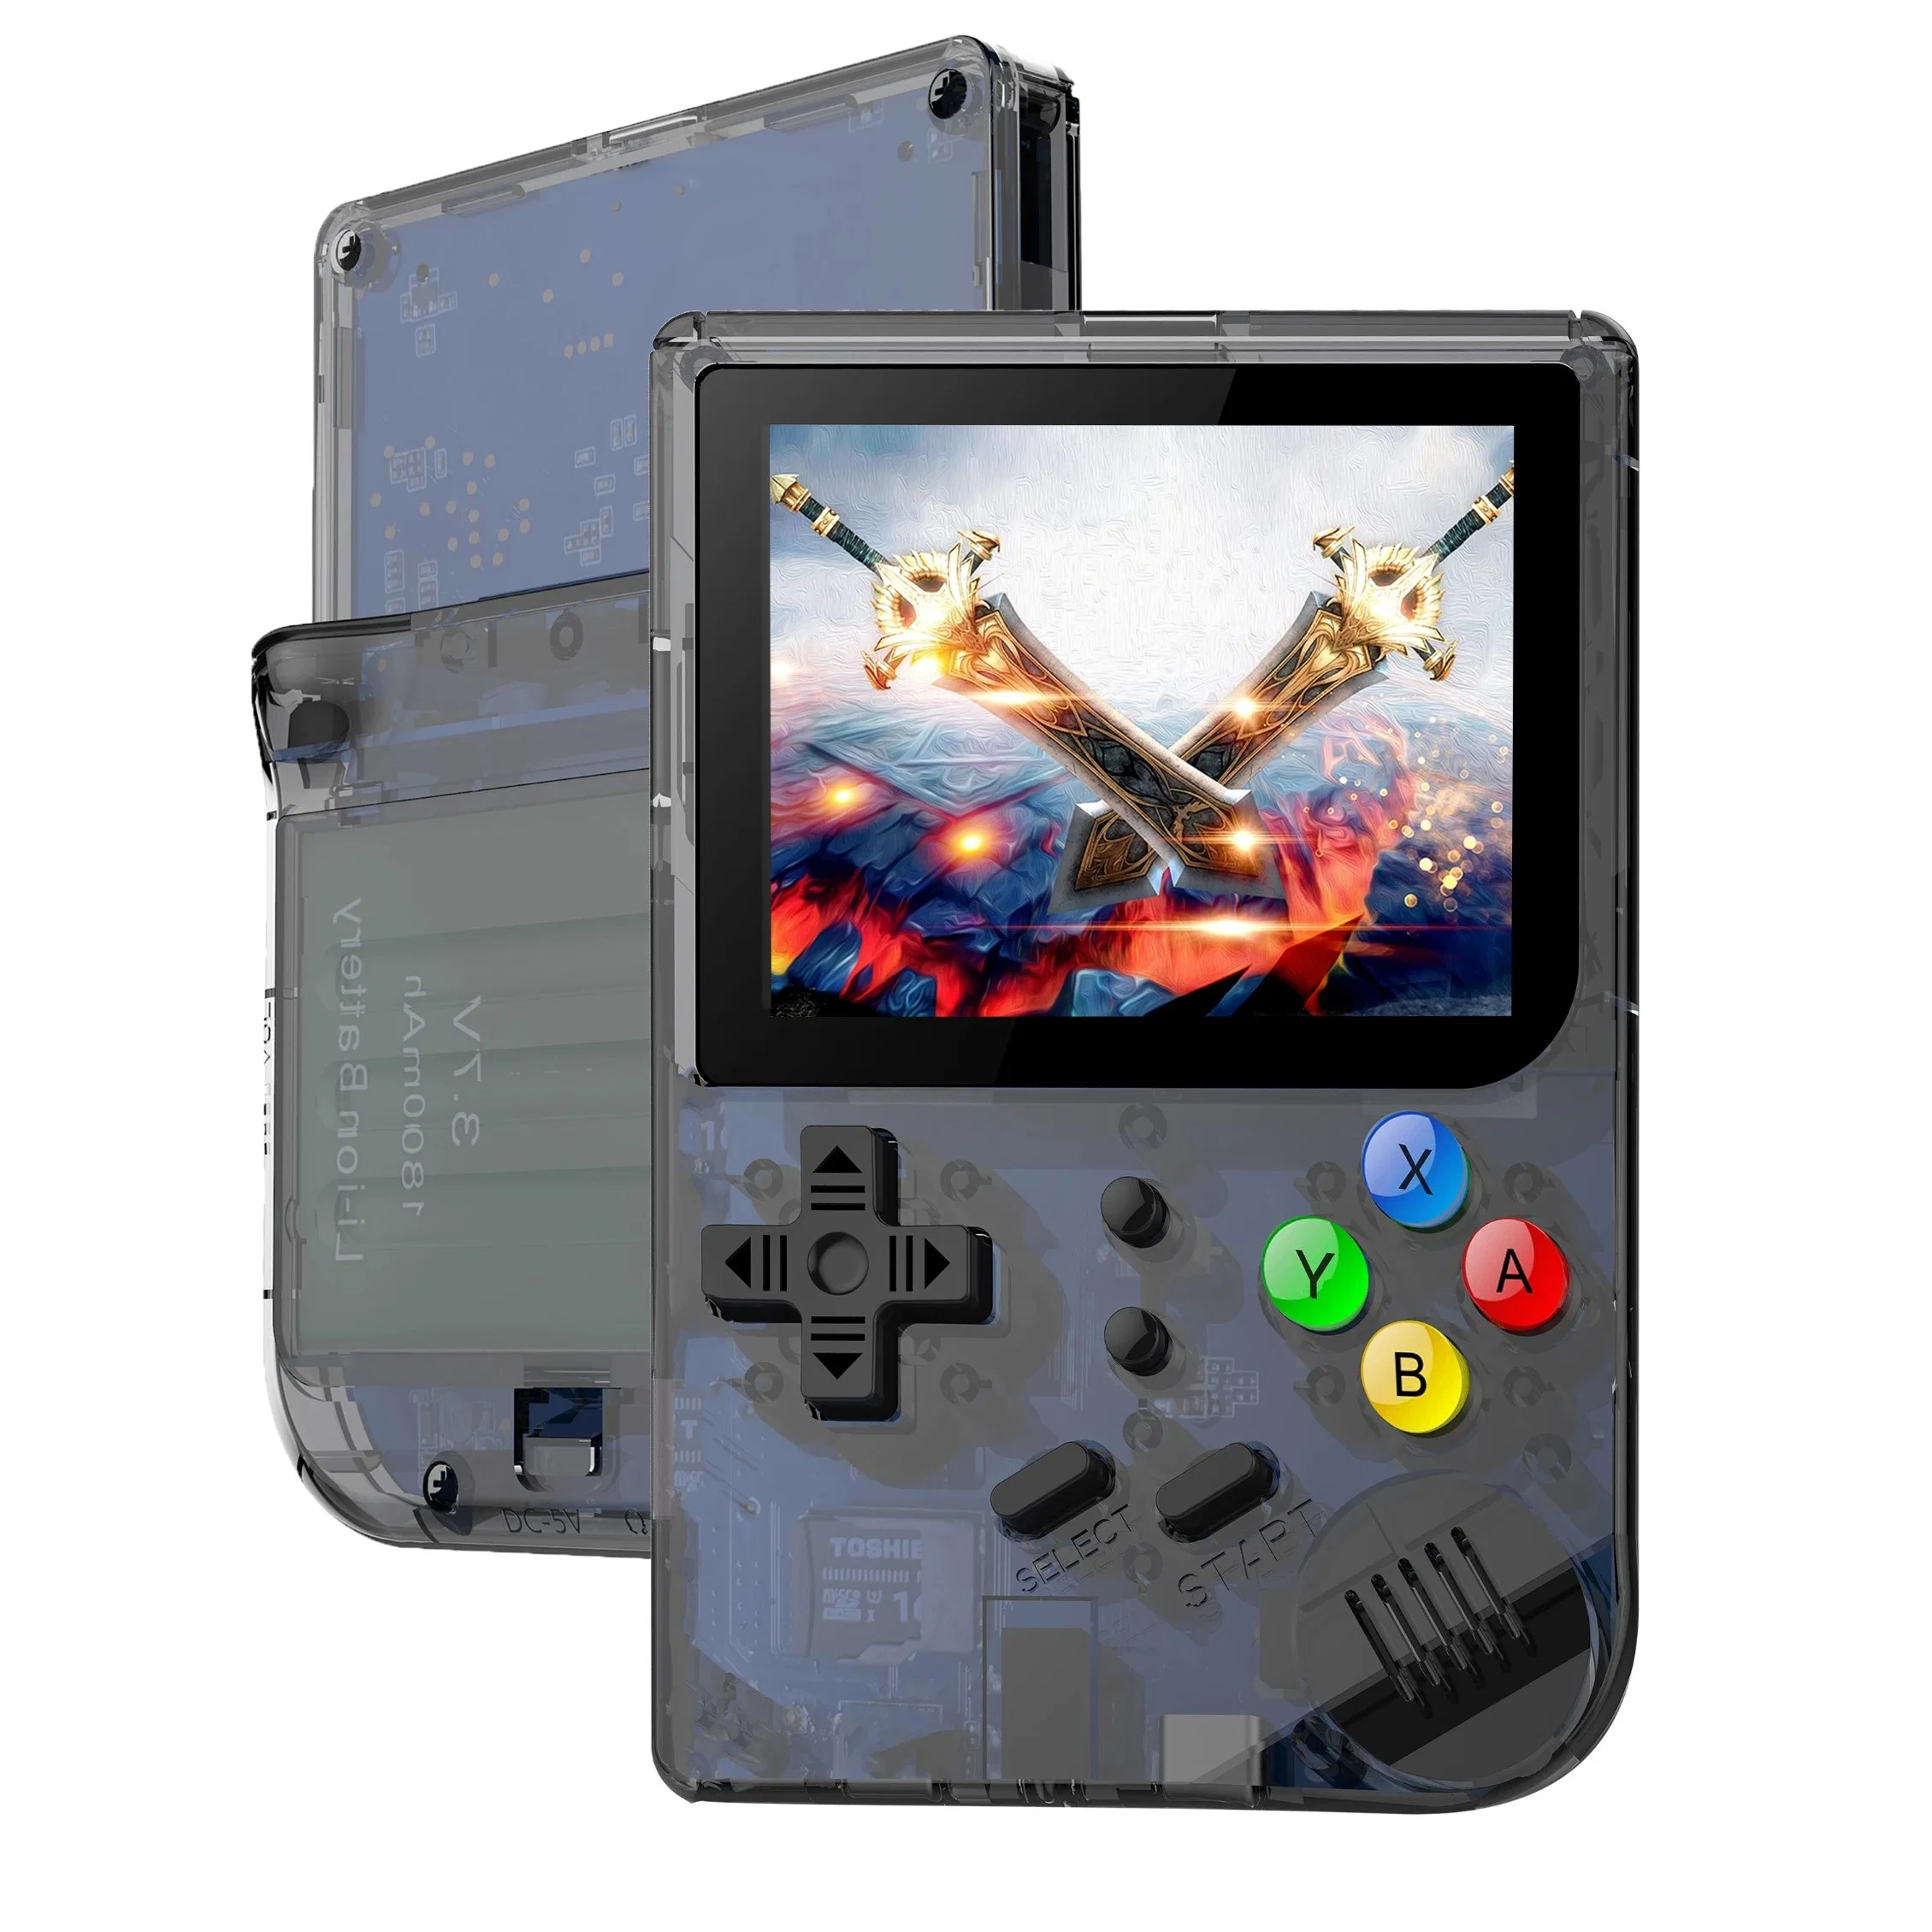 Rg300 Portable Retro Handheld Game consola de jogos de 3,0 polegadas IPS Hdscreen Video Consolas de jogos Emulador de jogos clássico para sistema Linux